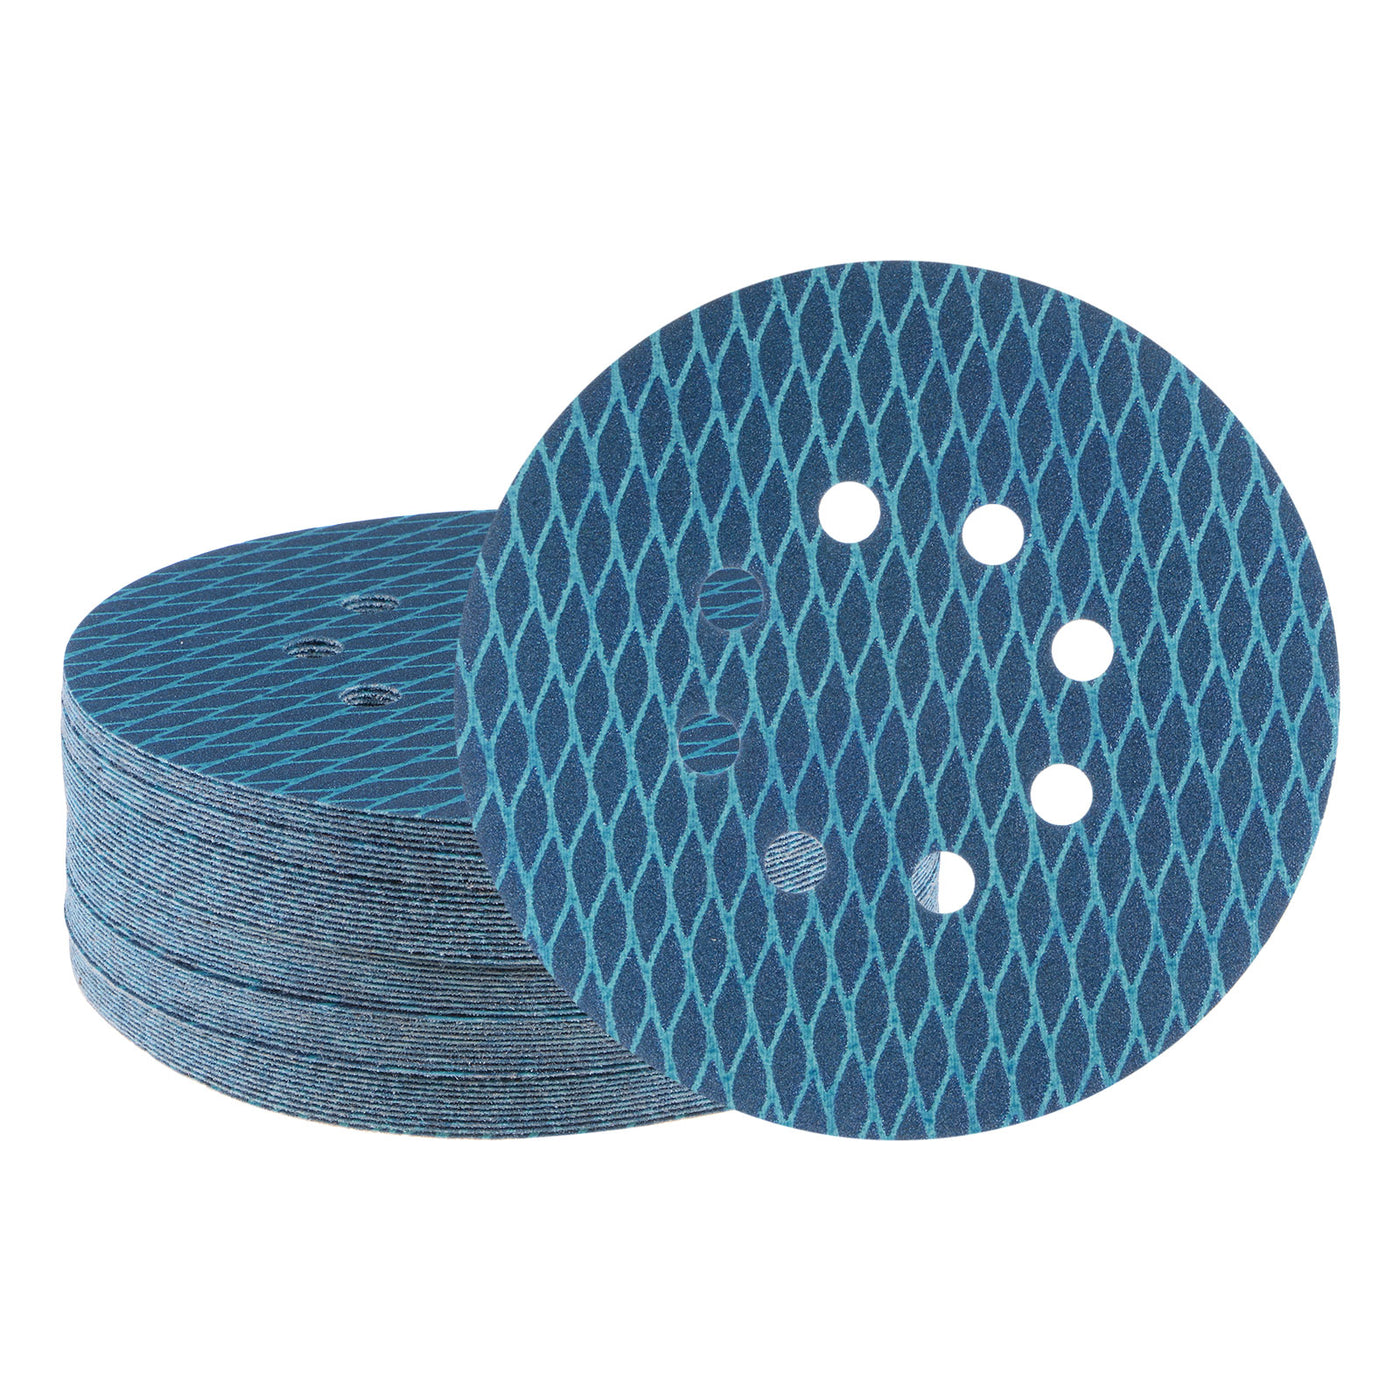 Harfington 50pcs Diamond Shape Sanding Discs 6" 180 Grit Hook & Loop Rhomb Sandpaper 8 Hole